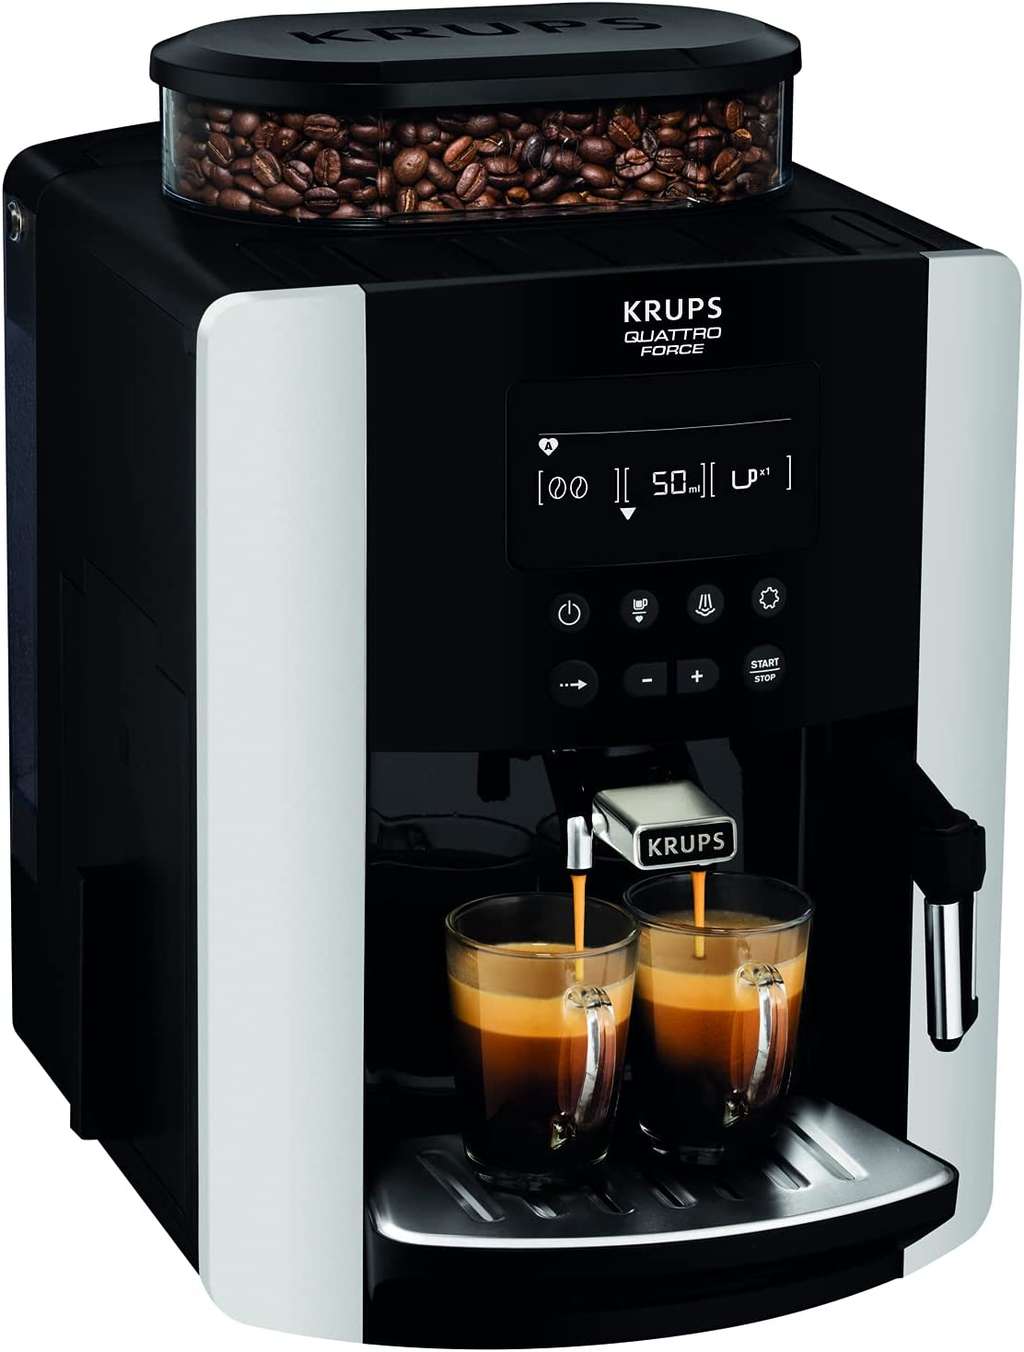 Bon plan : la machine à café à grain Krups Arabica Silver © Amazon